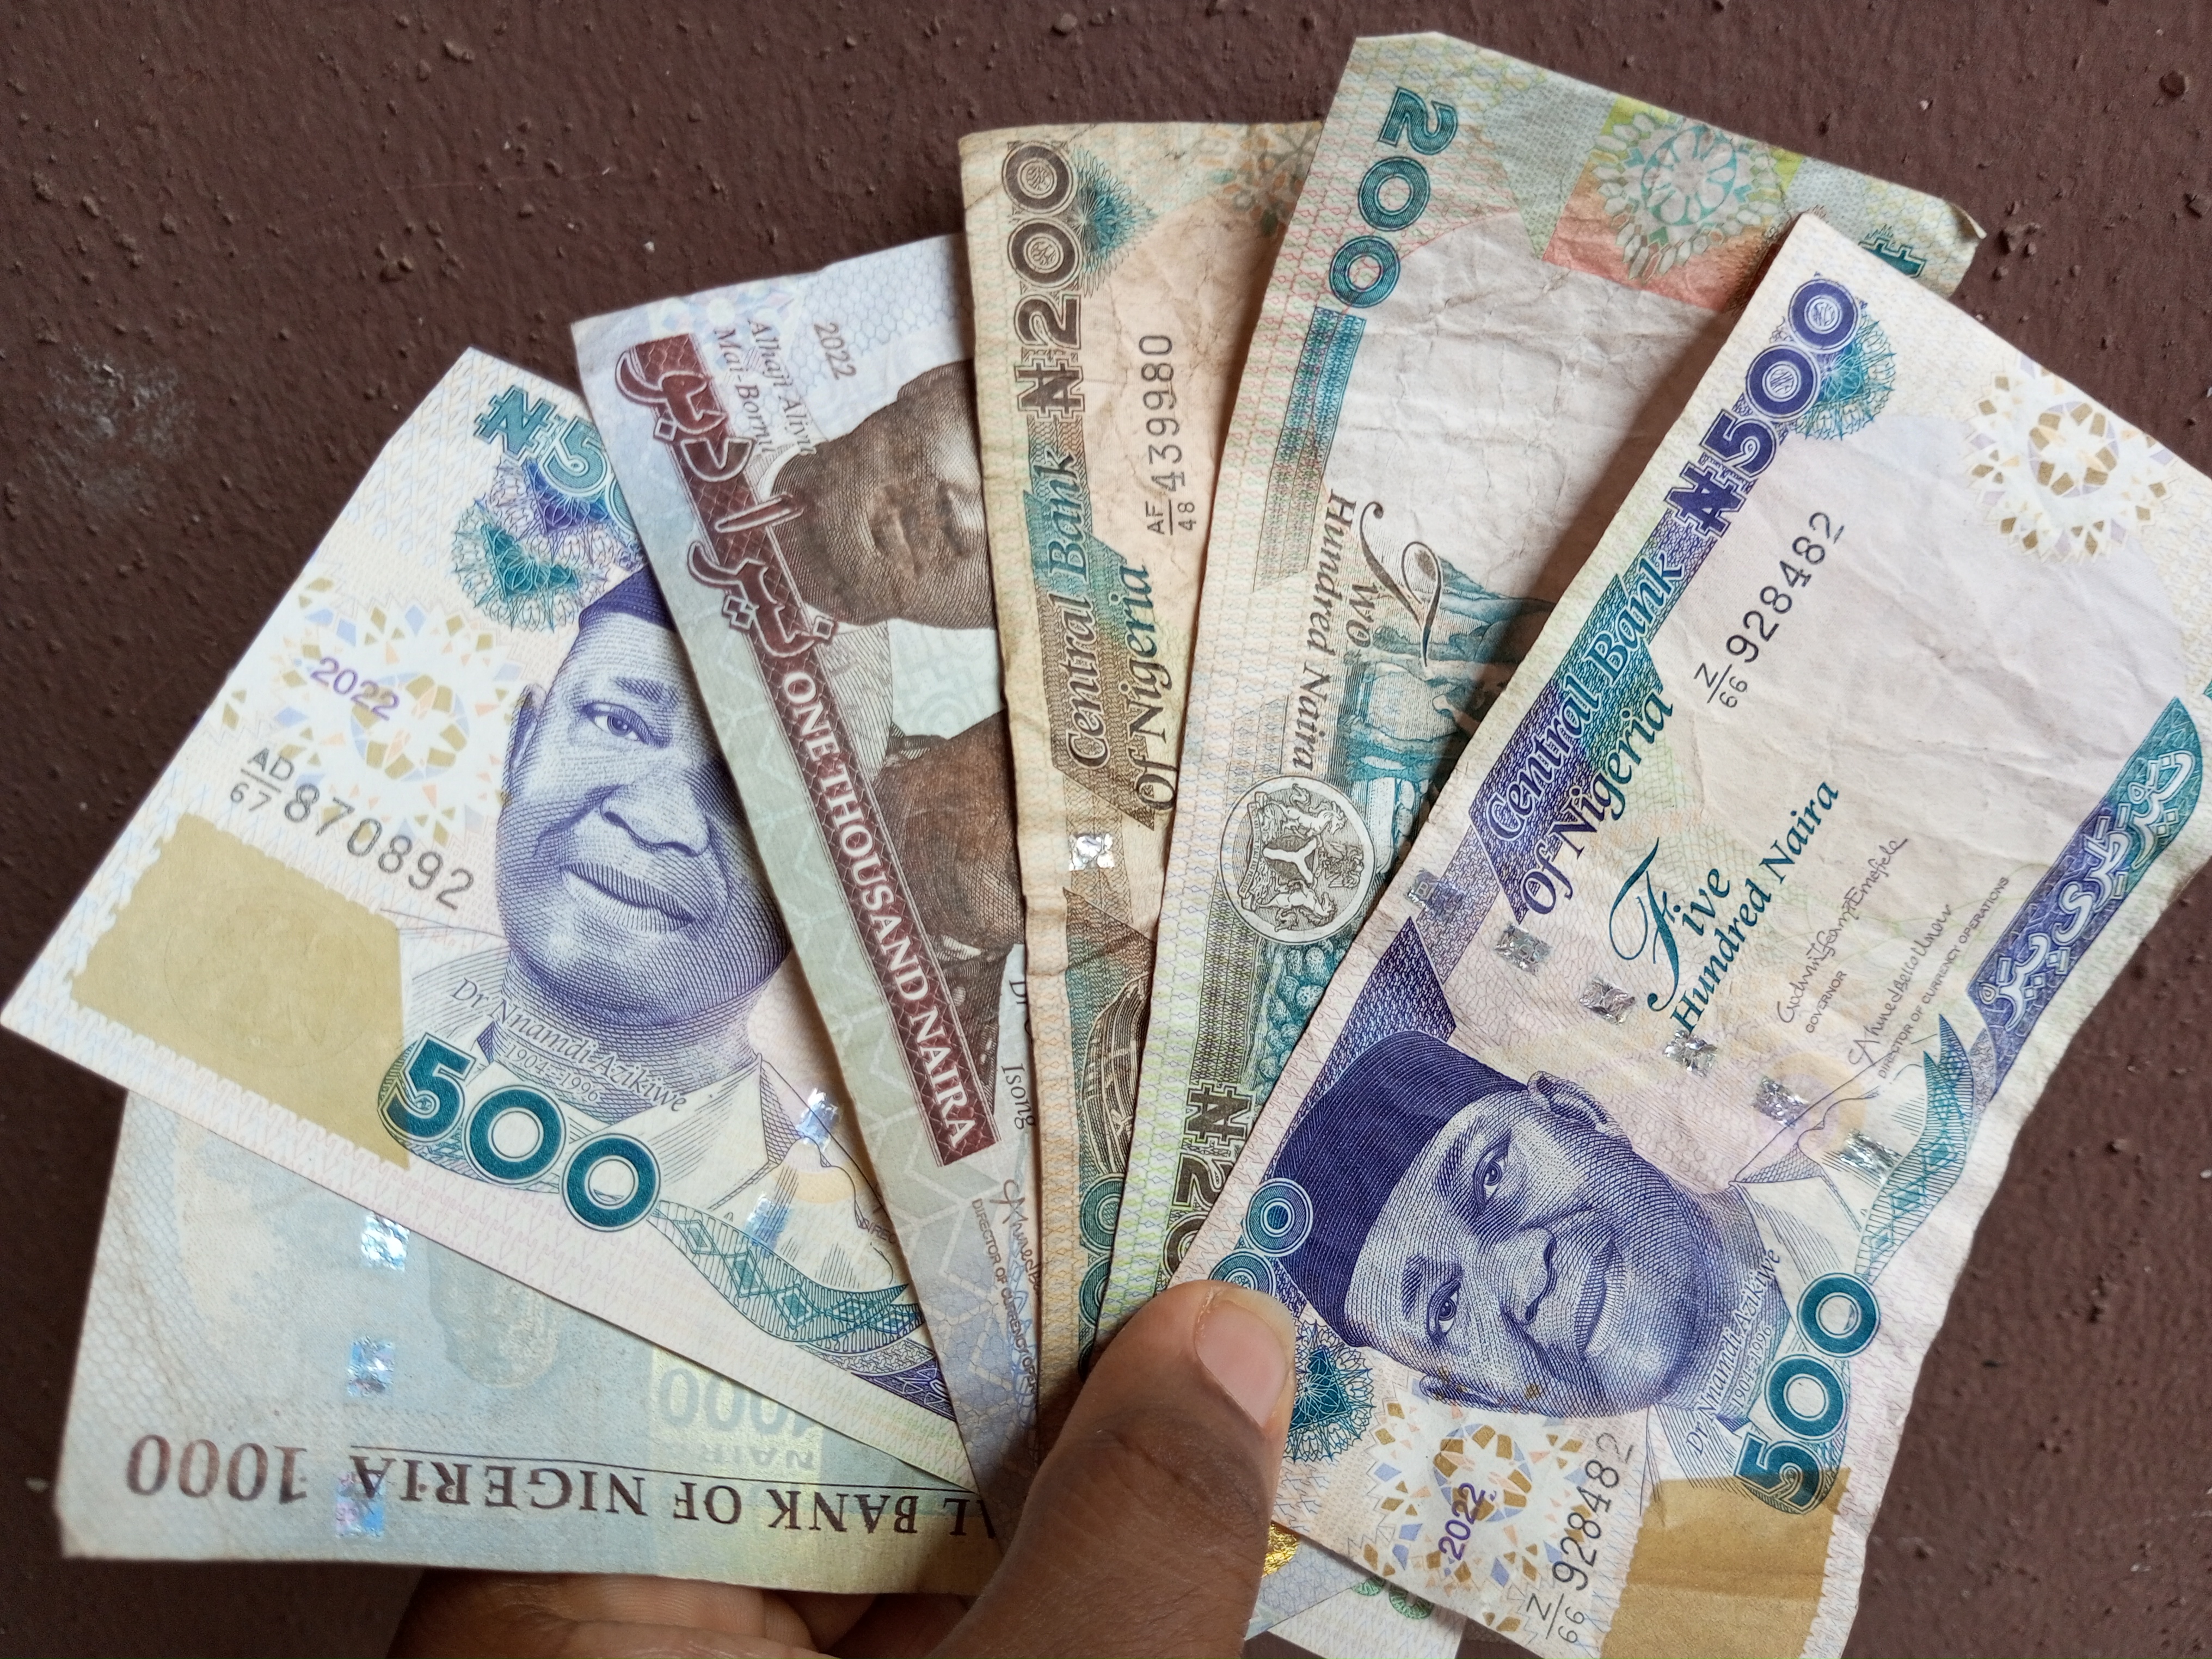 Nigeria’s President, Buhari to unveil redesigned Naira notes tomorrow